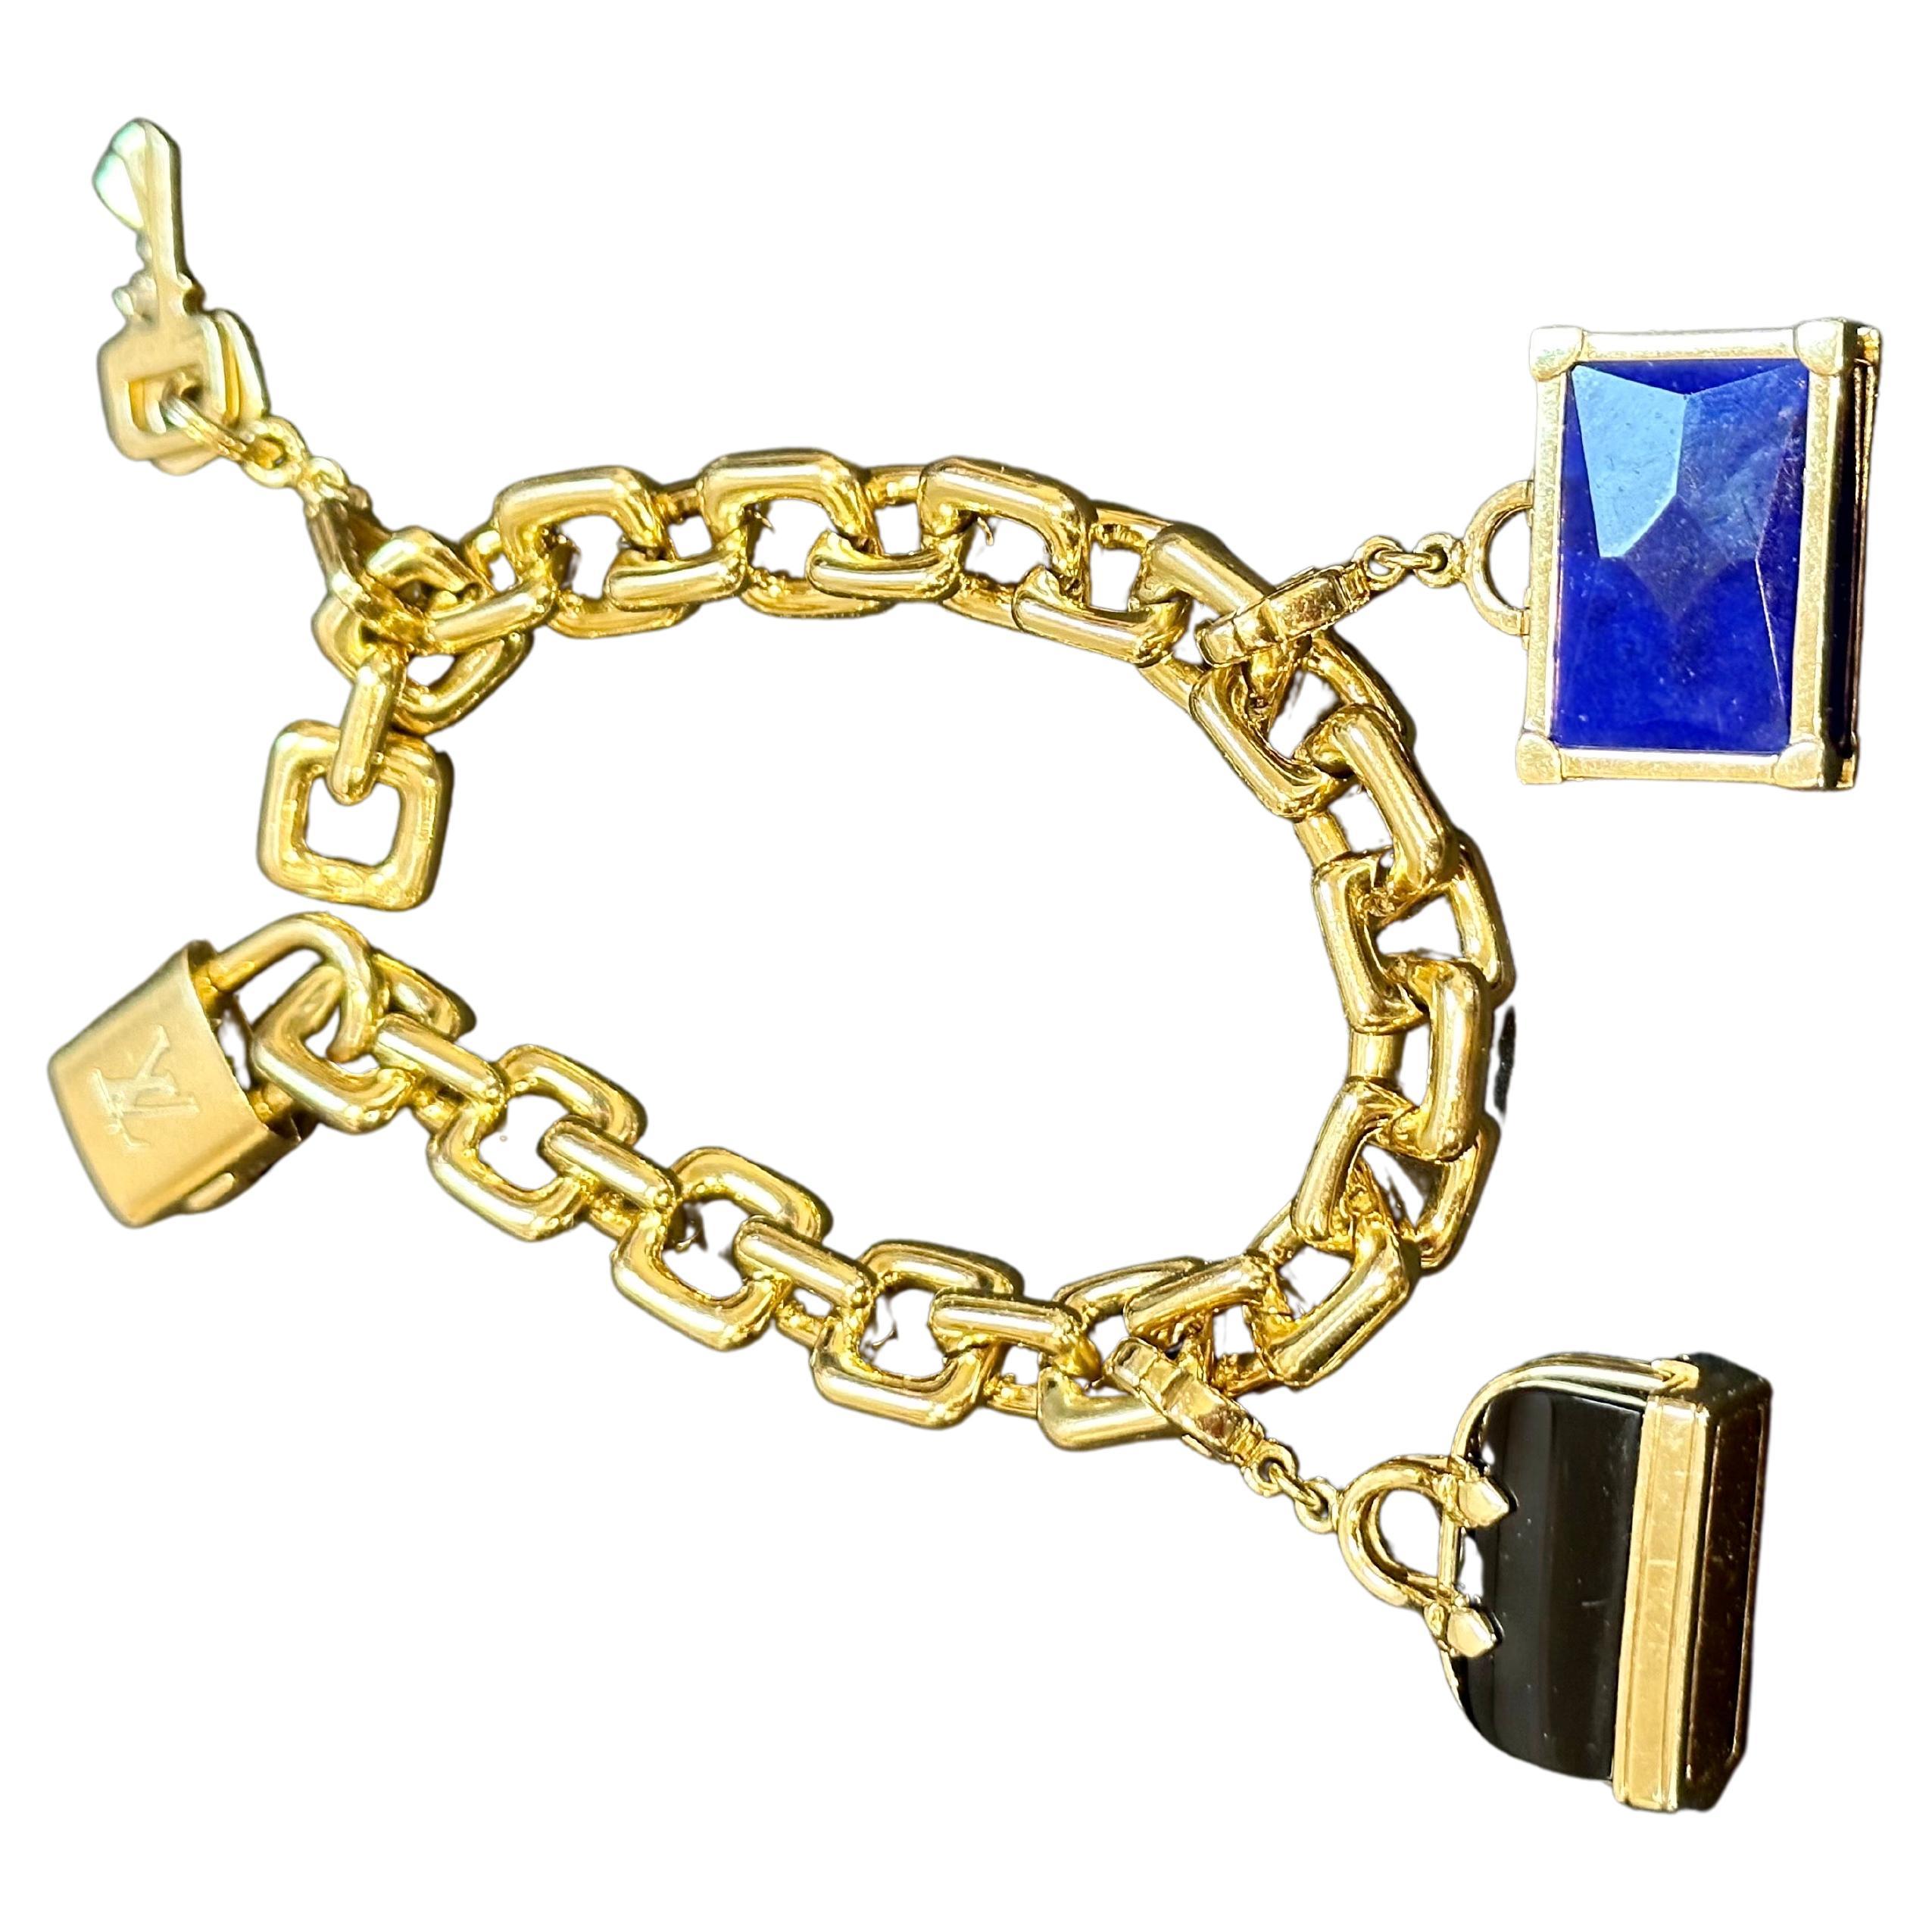 Louis Vuitton Padlock & Keys+ Two Bags Charm Bracelet en or jaune 125.7 Gm 18 KG
Unisexe

Composée d'une chaîne à maillons de câble de forme carrée avec des charmes de serrure et de clé suspendus.
La serrure est fonctionnelle grâce à une fermeture à